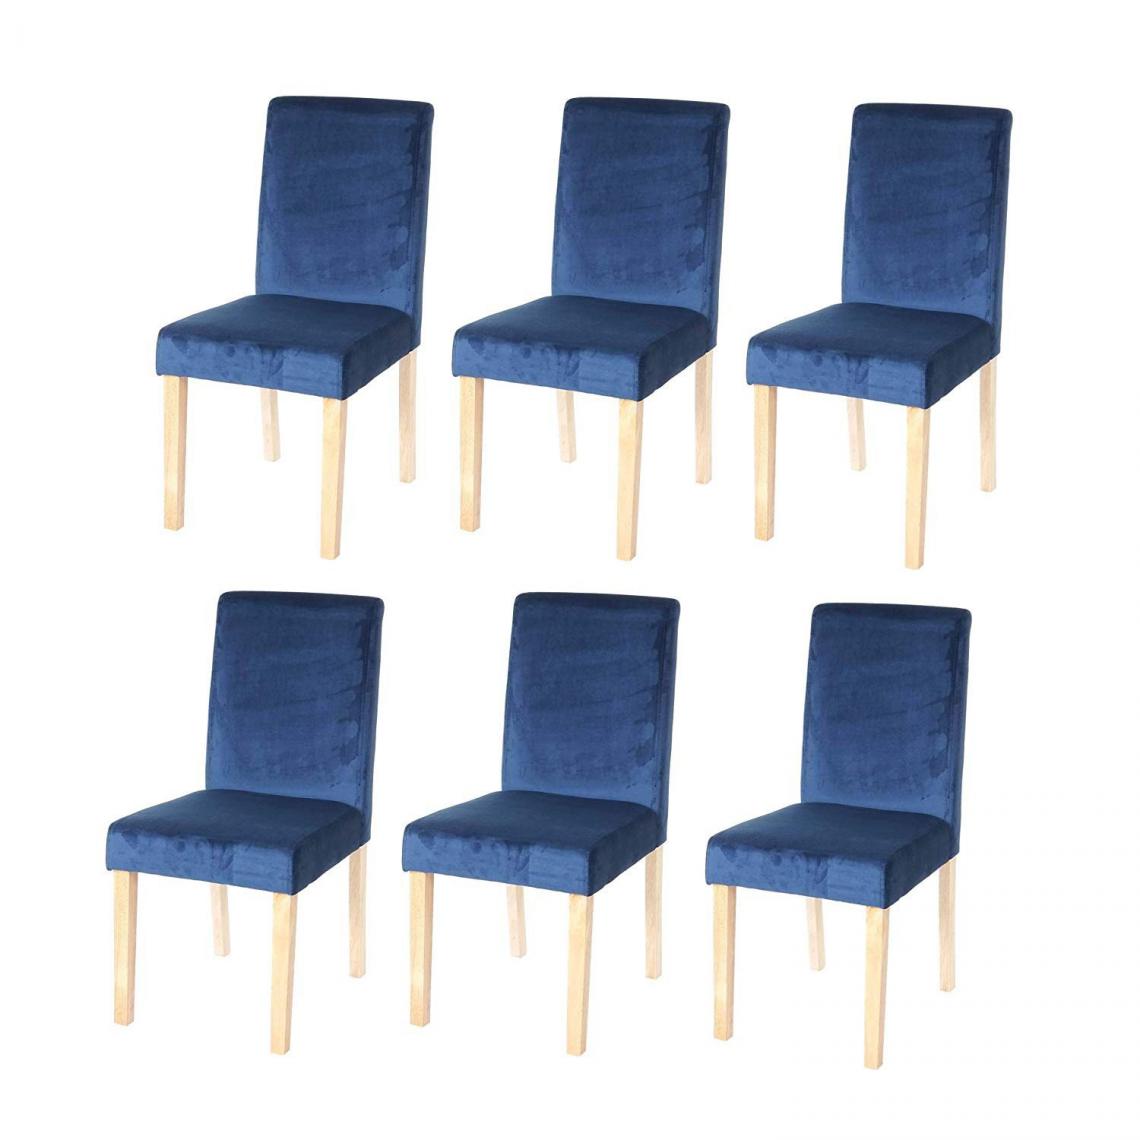 Decoshop26 - Lot de 6 chaises de salle à manger / cuisine en tissu velours bleu pétrole CDS04611 - Chaises